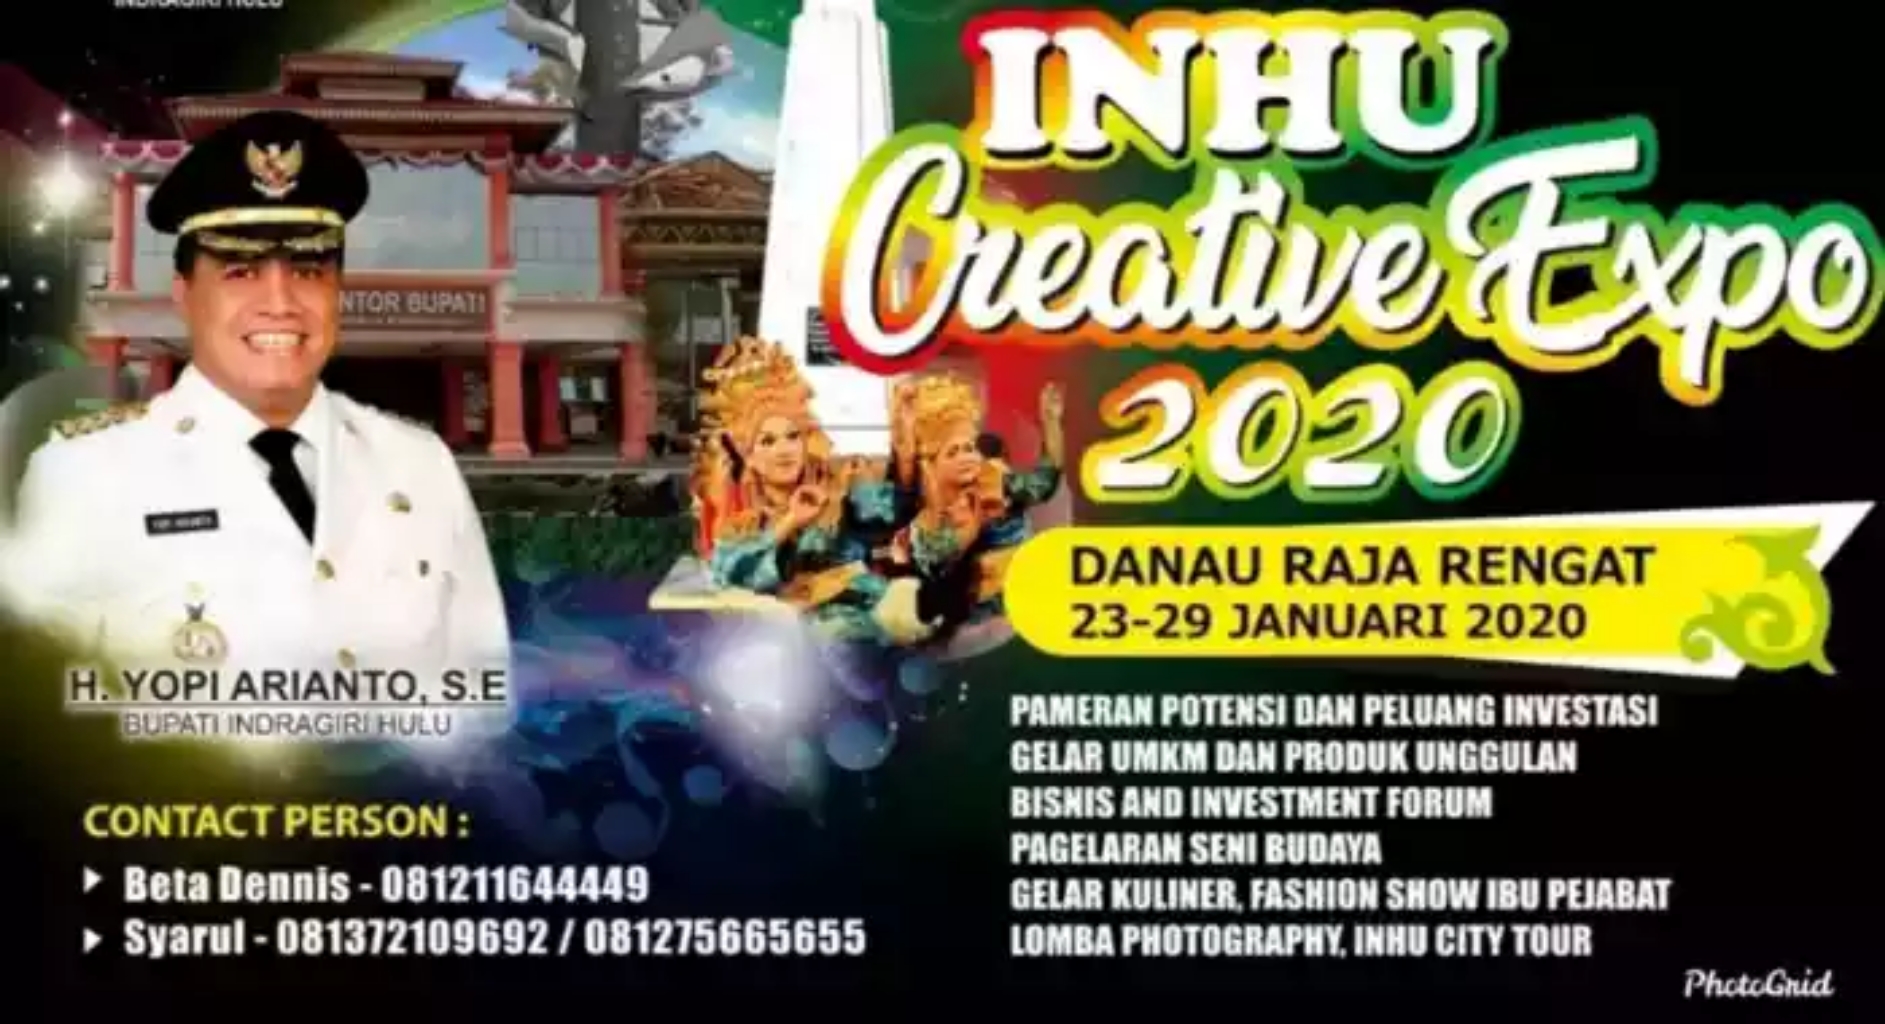 Besok, di Danau Raja, Event Inhu Creative Expo 2020 Mendatangkan Artis Ibu Kota, Jenita Janet